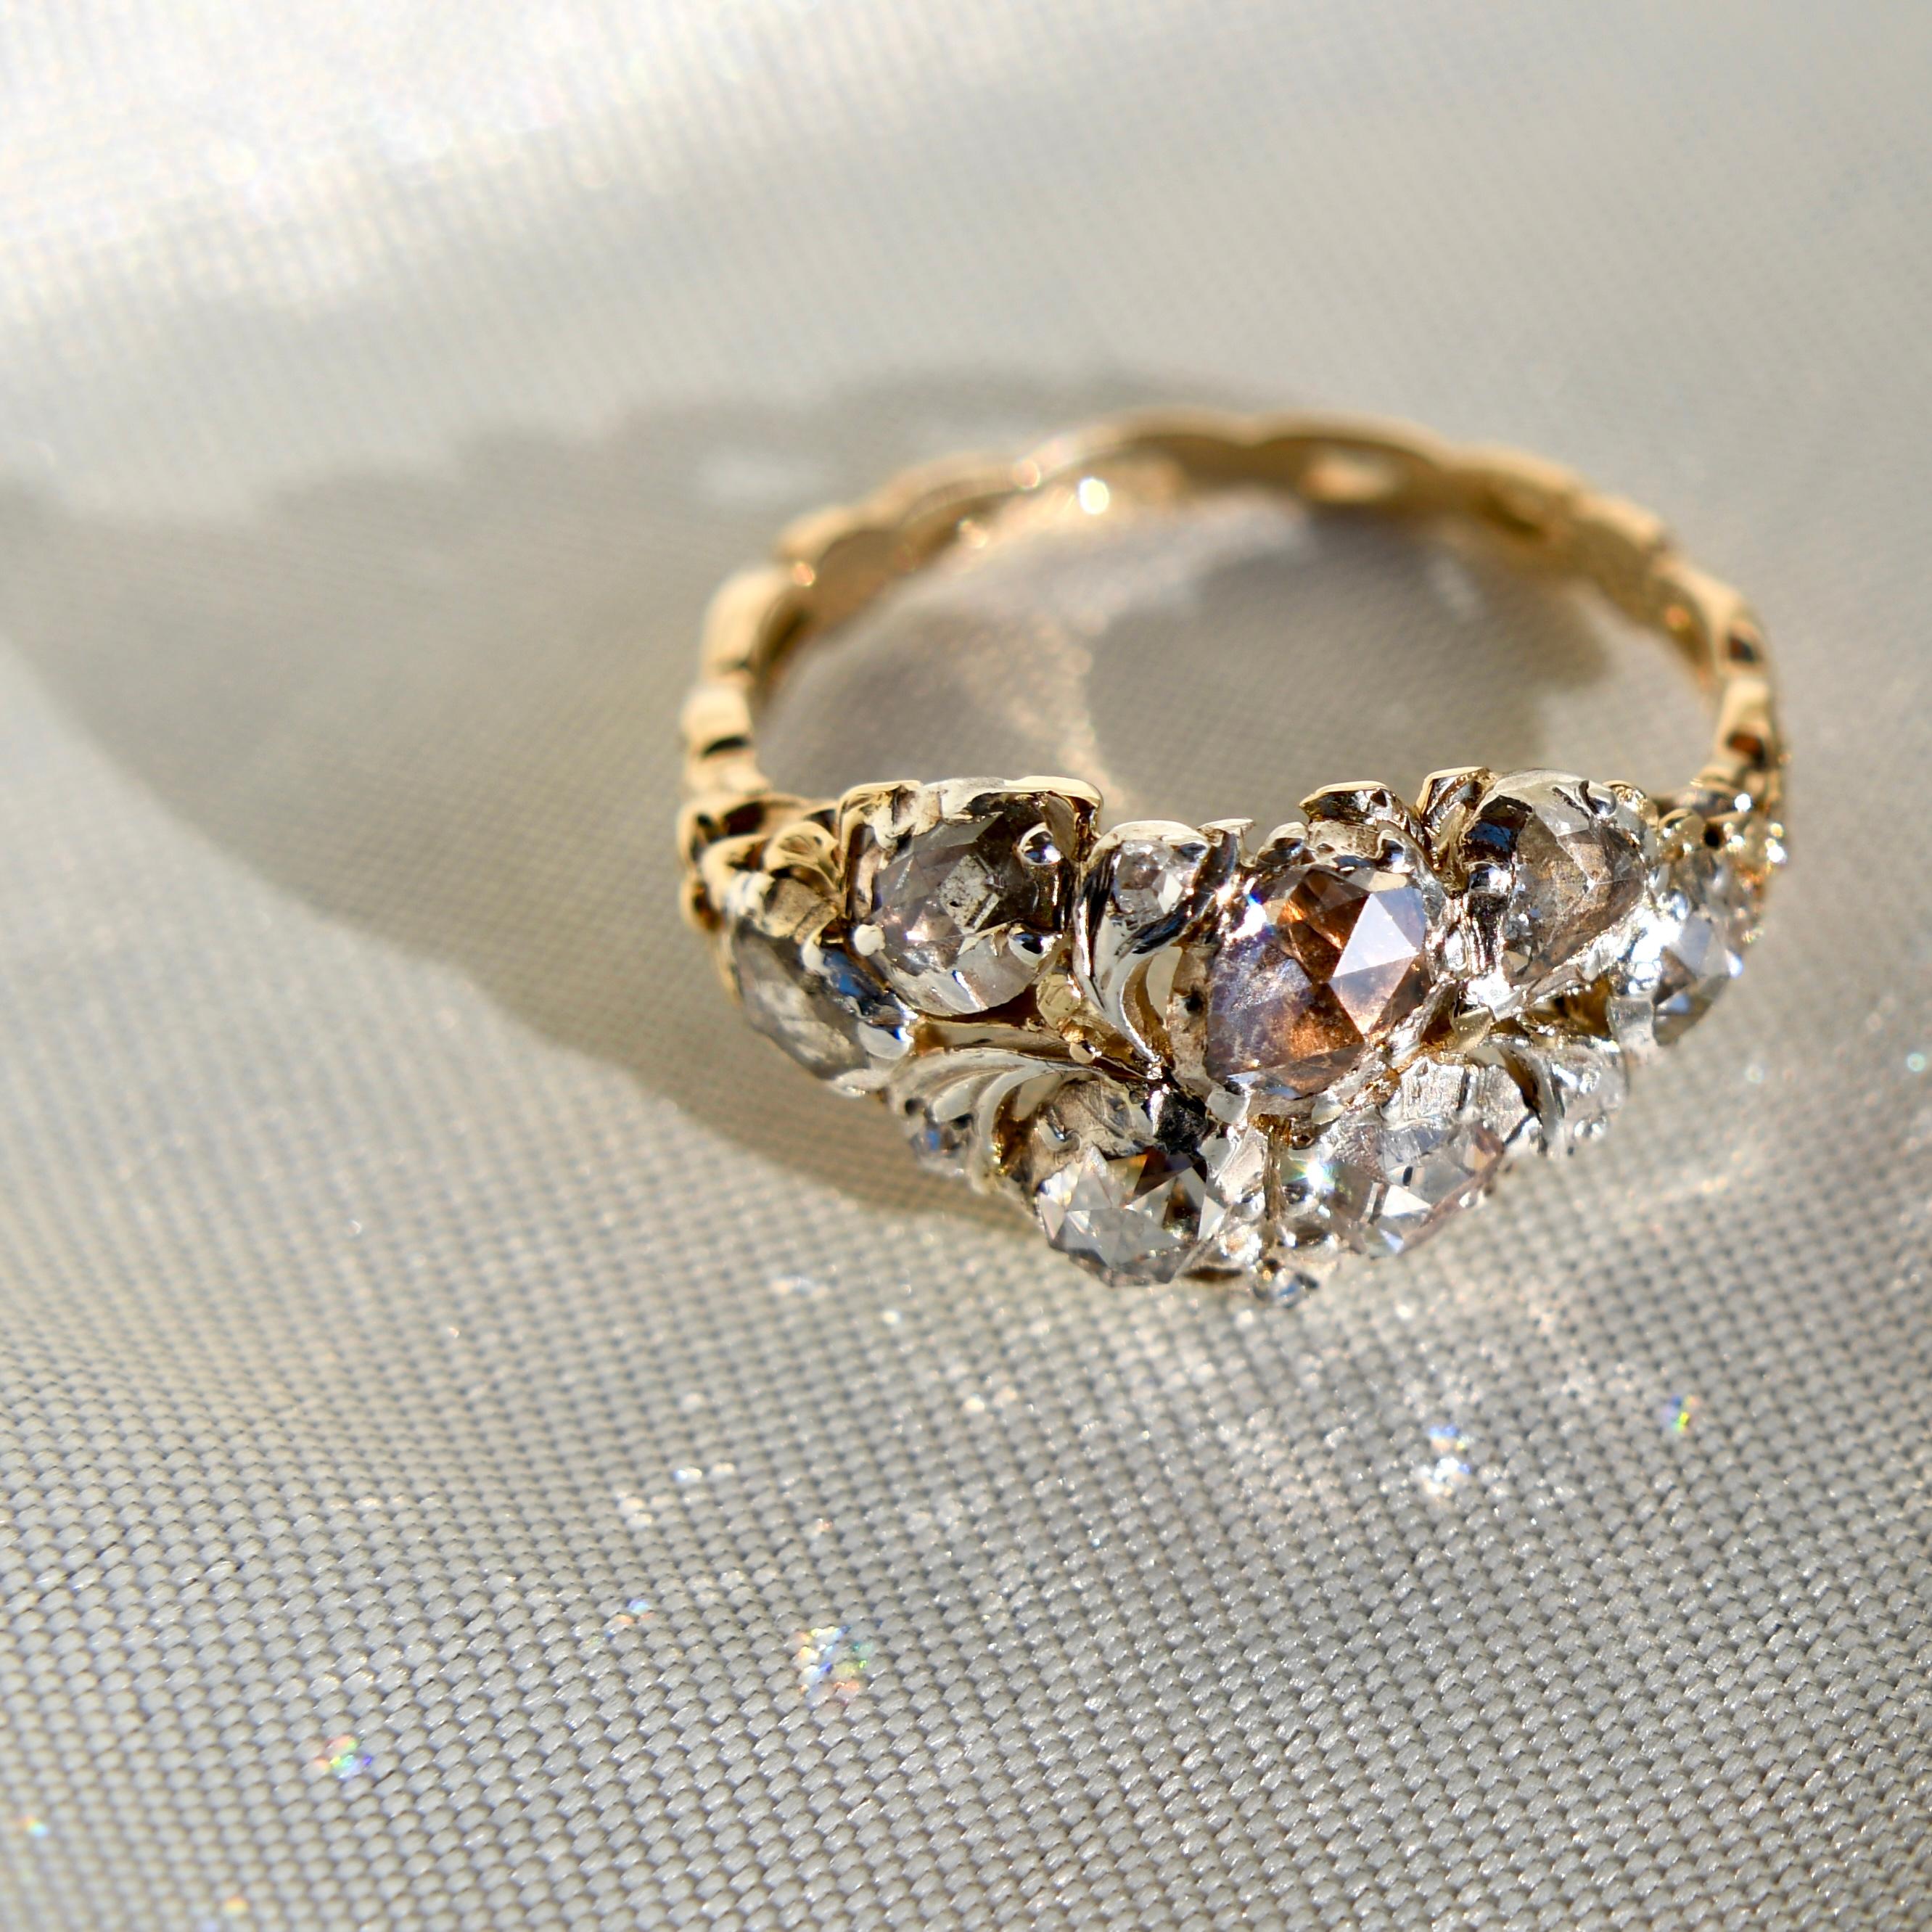 Dieser Ring wurde wahrscheinlich um 1760 in Frankreich hergestellt und ist in sehr gutem, antikem Zustand. 

- Elf Diamanten im Rosenschliff, insgesamt ca. 1,50 Karat 
- 585/ 14 kt Gelbgold und Silber  
- Ringgröße: EU 56, UK P, US 7 1/2 (nicht